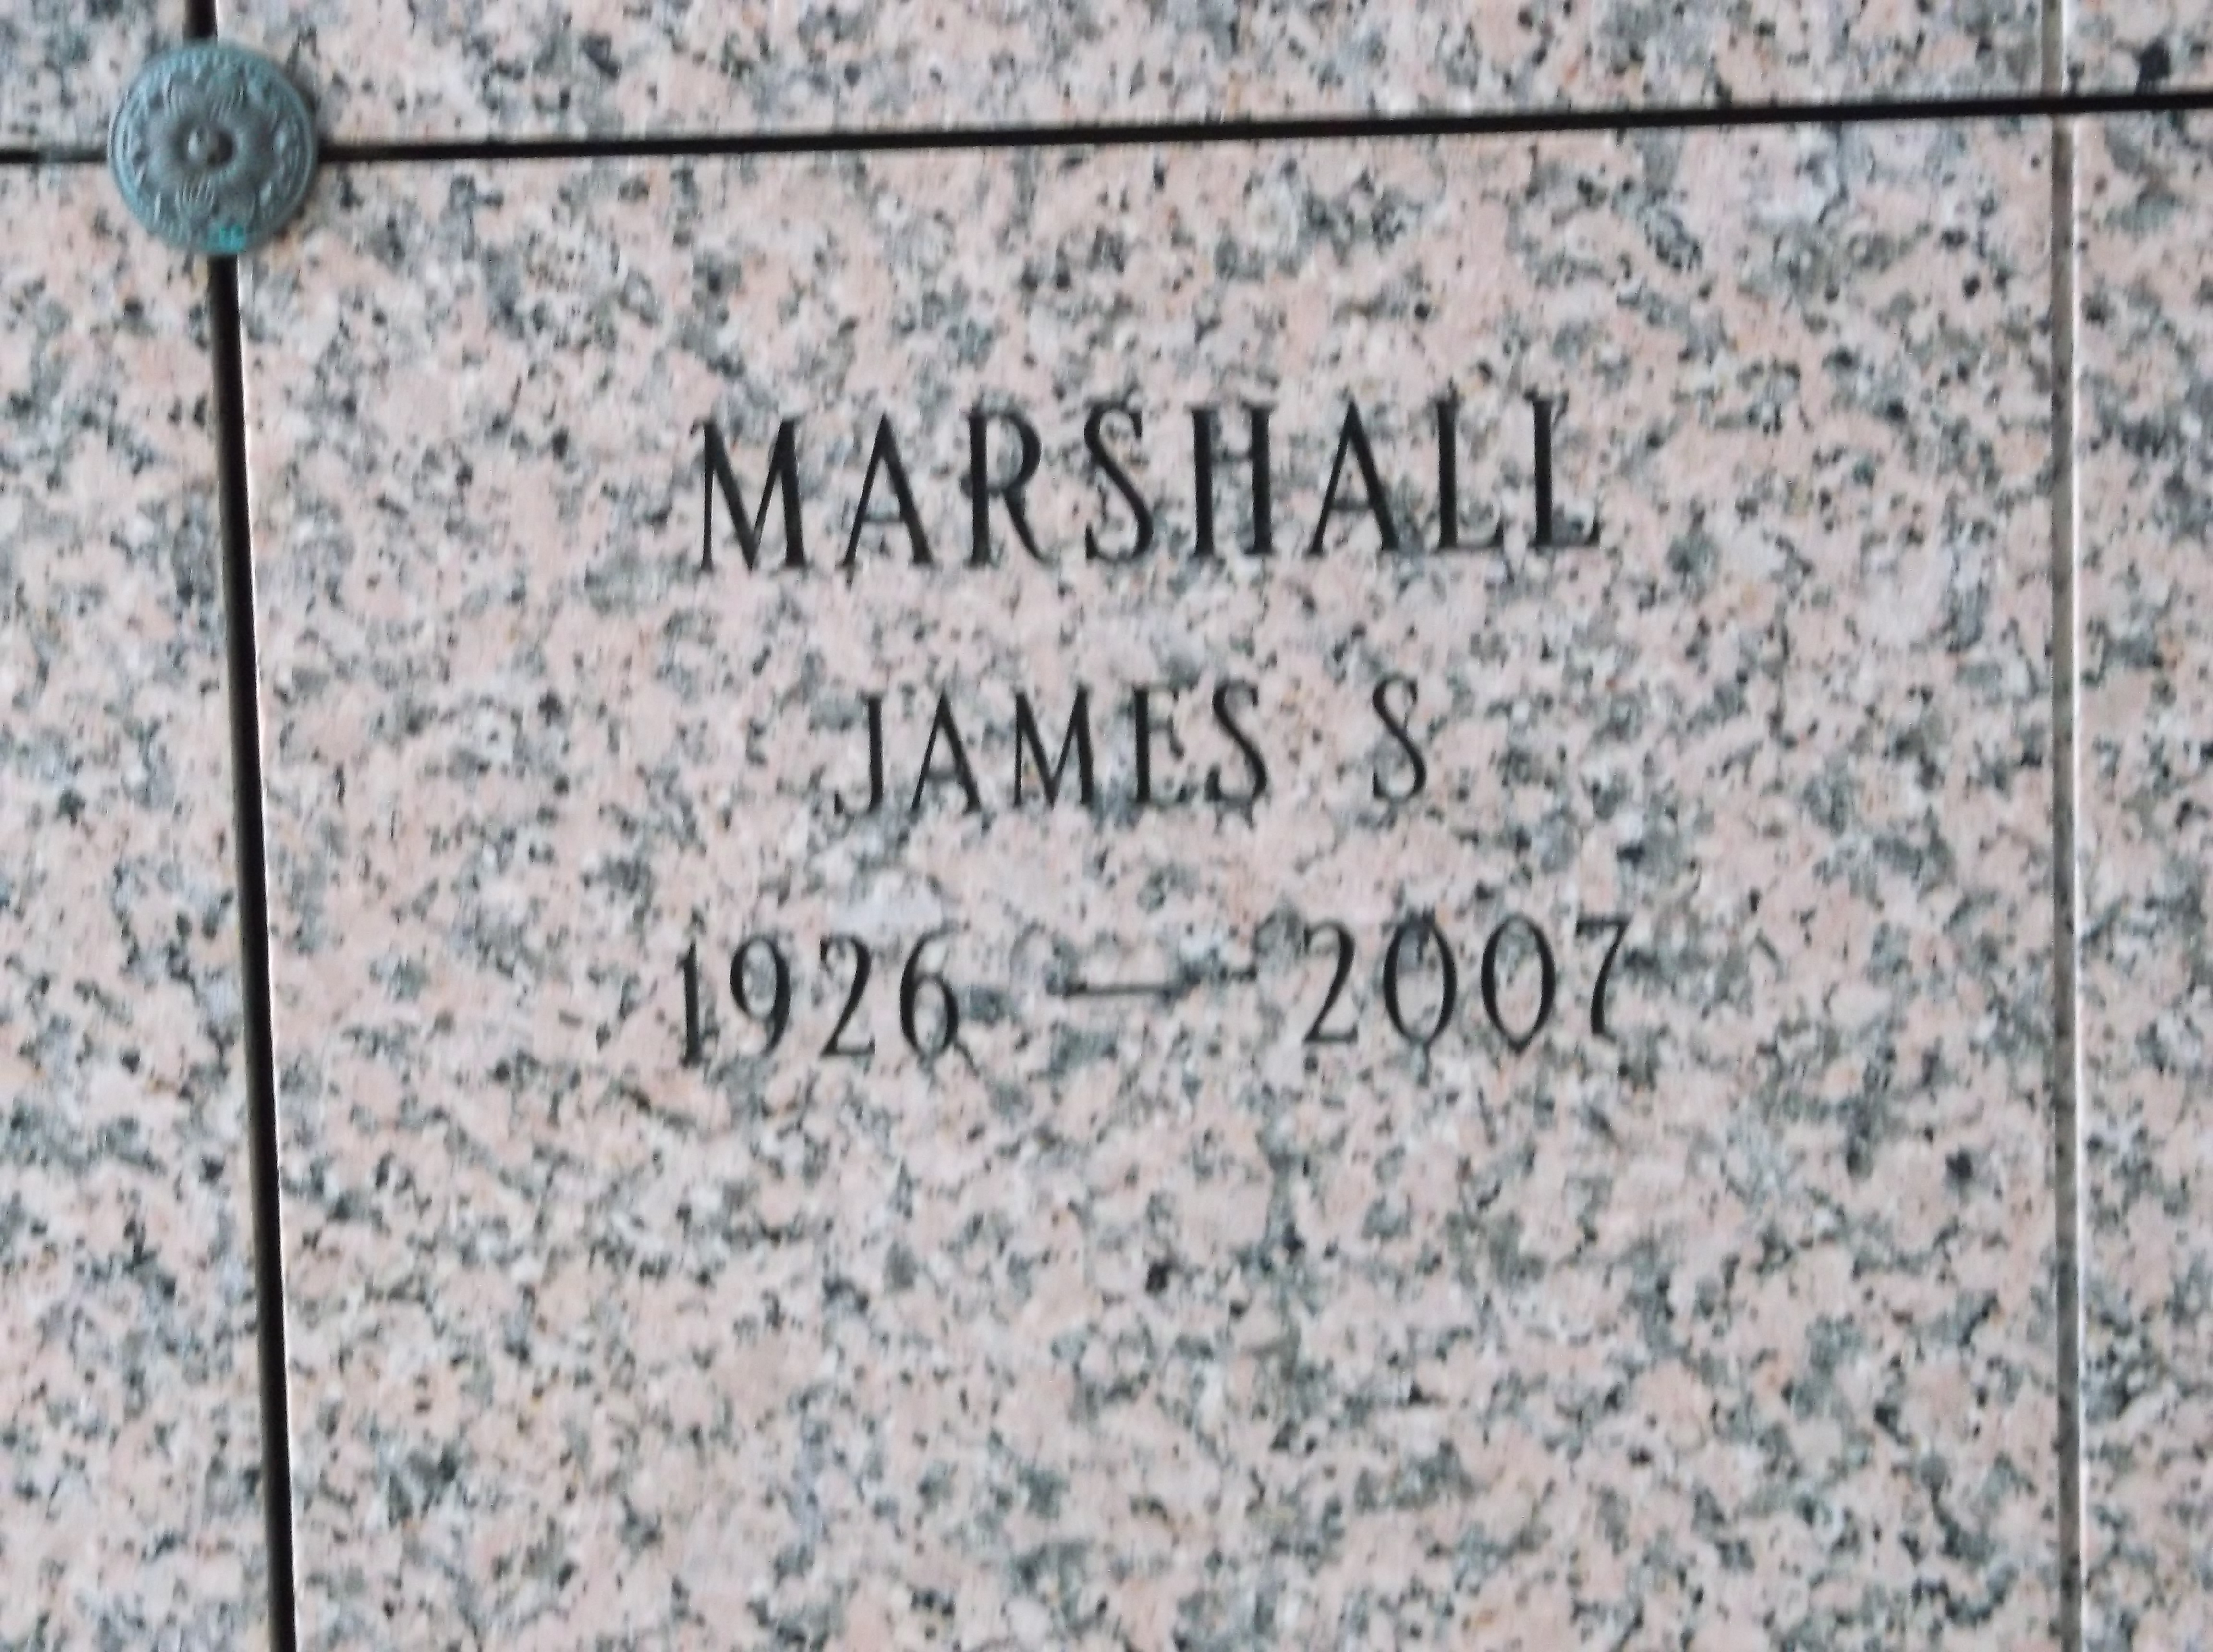 James S Marshall